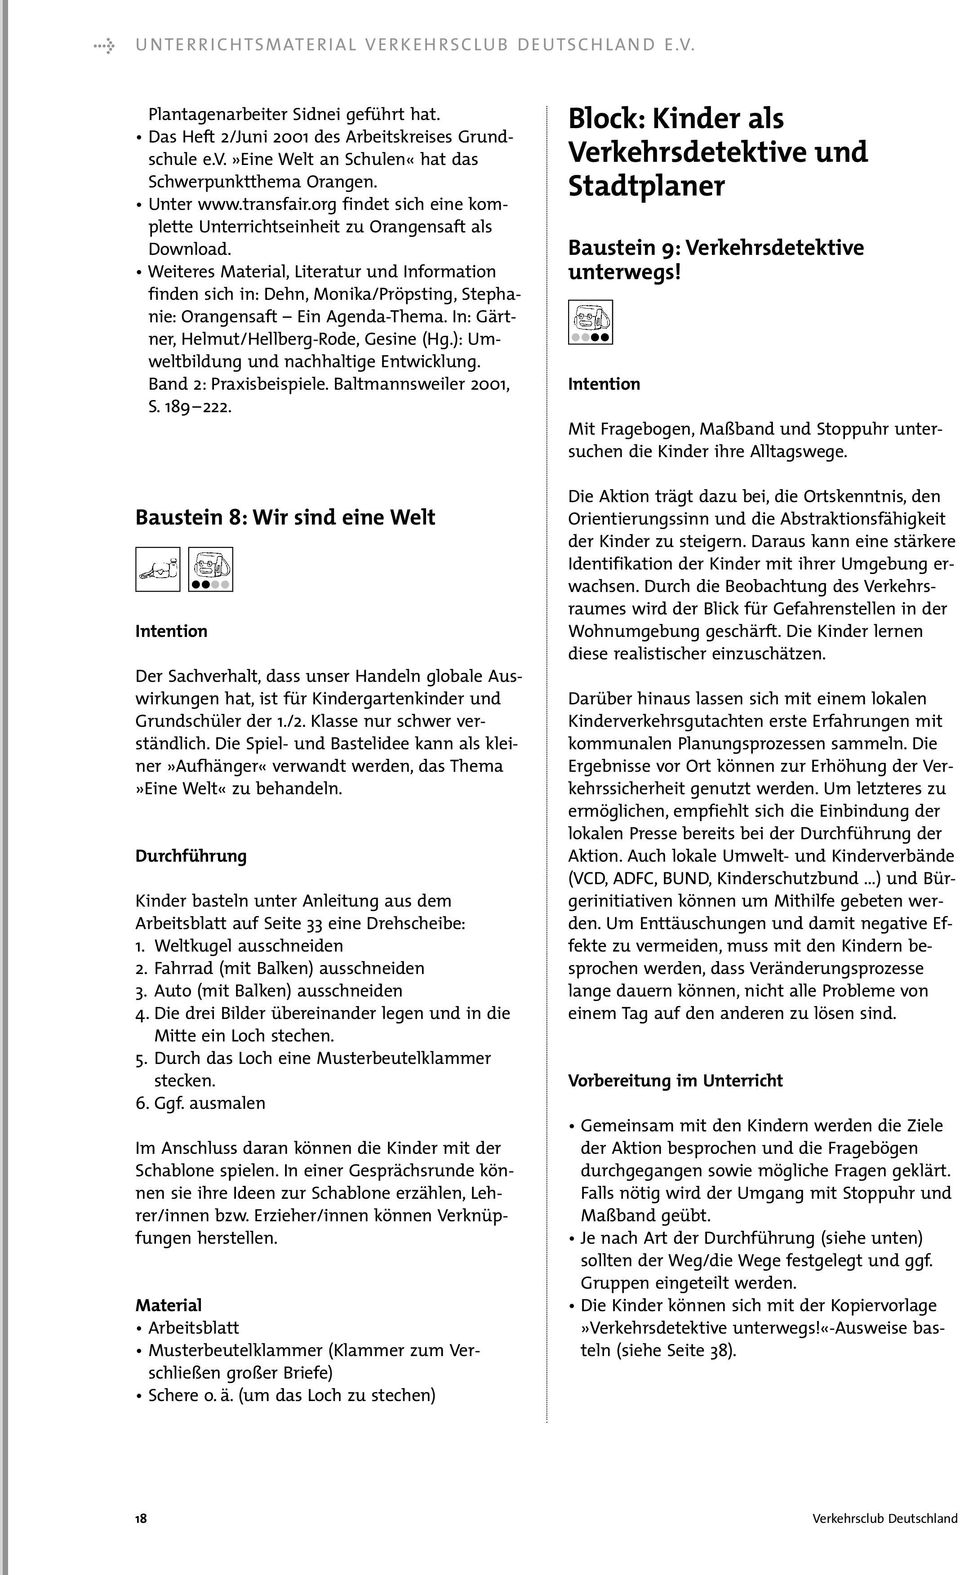 Weiteres Material, Literatur und Information finden sich in: Dehn, Monika/Pröpsting, Stephanie: Orangensaft Ein Agenda-Thema.In: Gärtner, Helmut/Hellberg-Rode, Gesine (Hg.